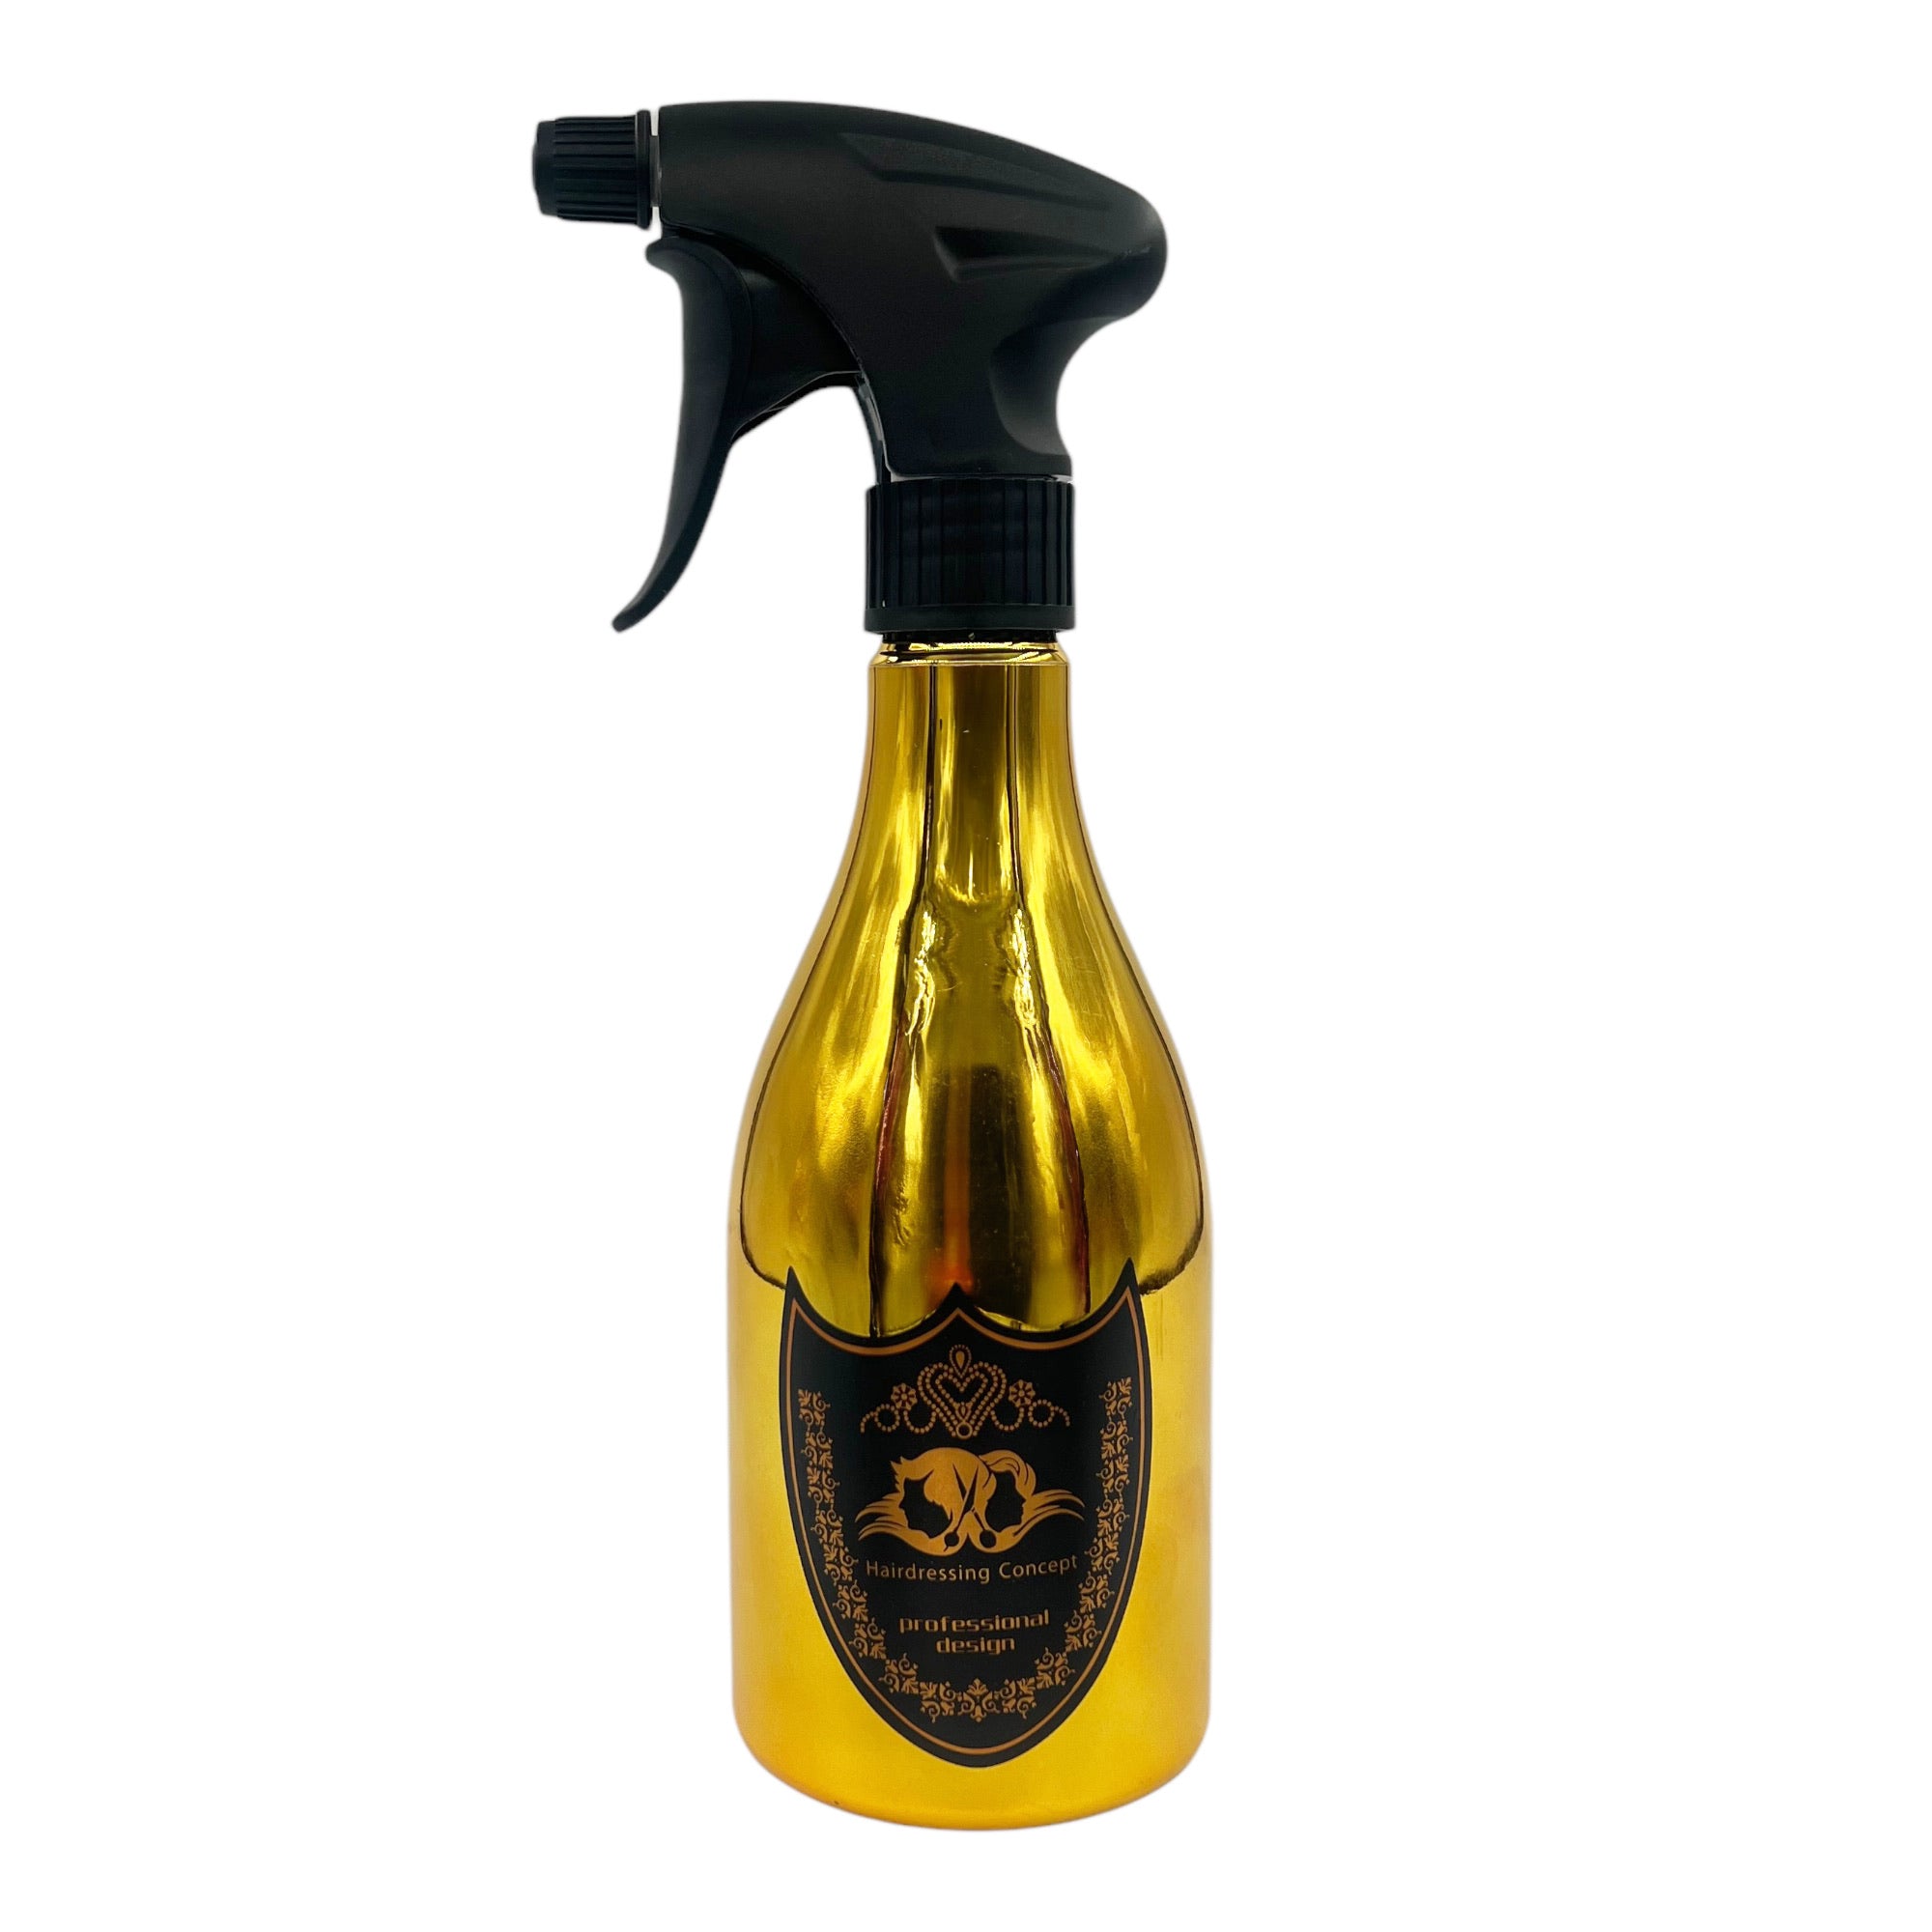 Eson - Water Spray Bottle 500ml Extreme Mist Sprayer Champagne Style (Gold)